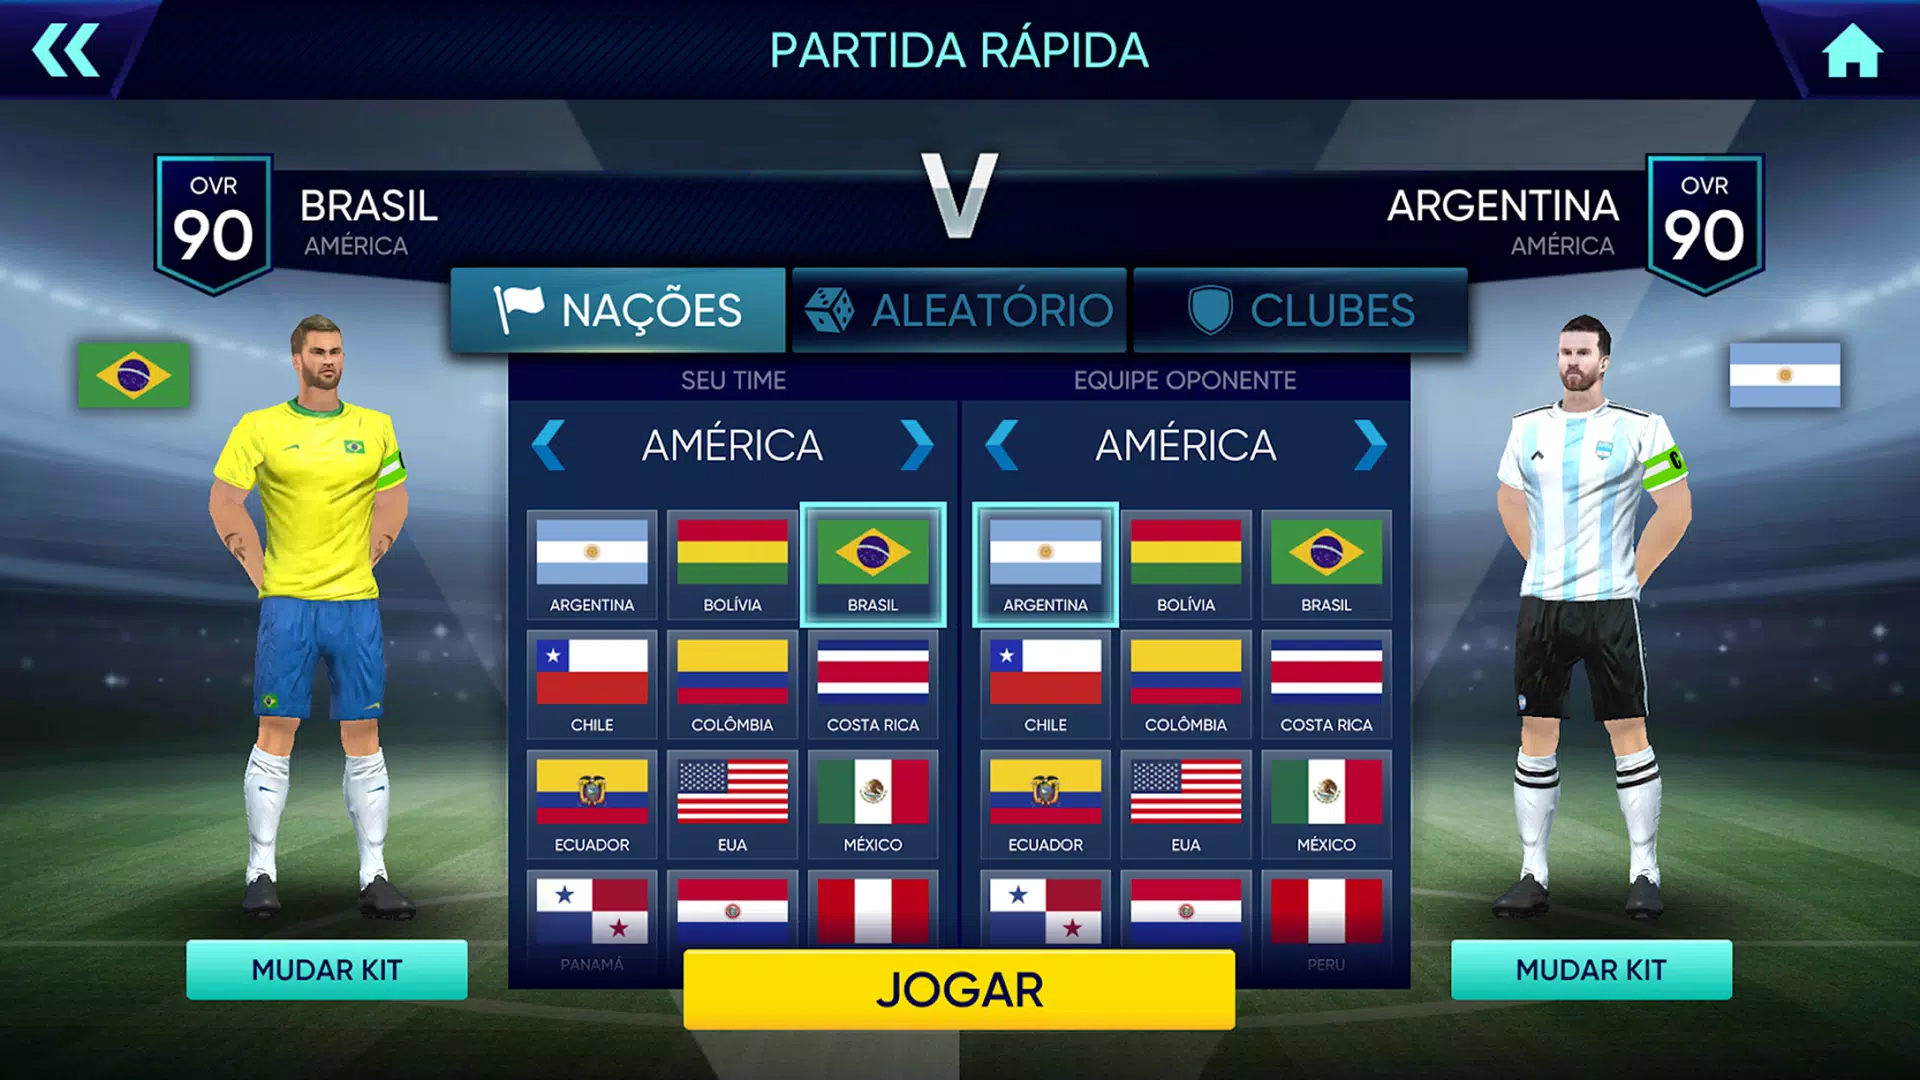 Download Jogo de Futebol 2023 Free for Android - Jogo de Futebol 2023 APK  Download 